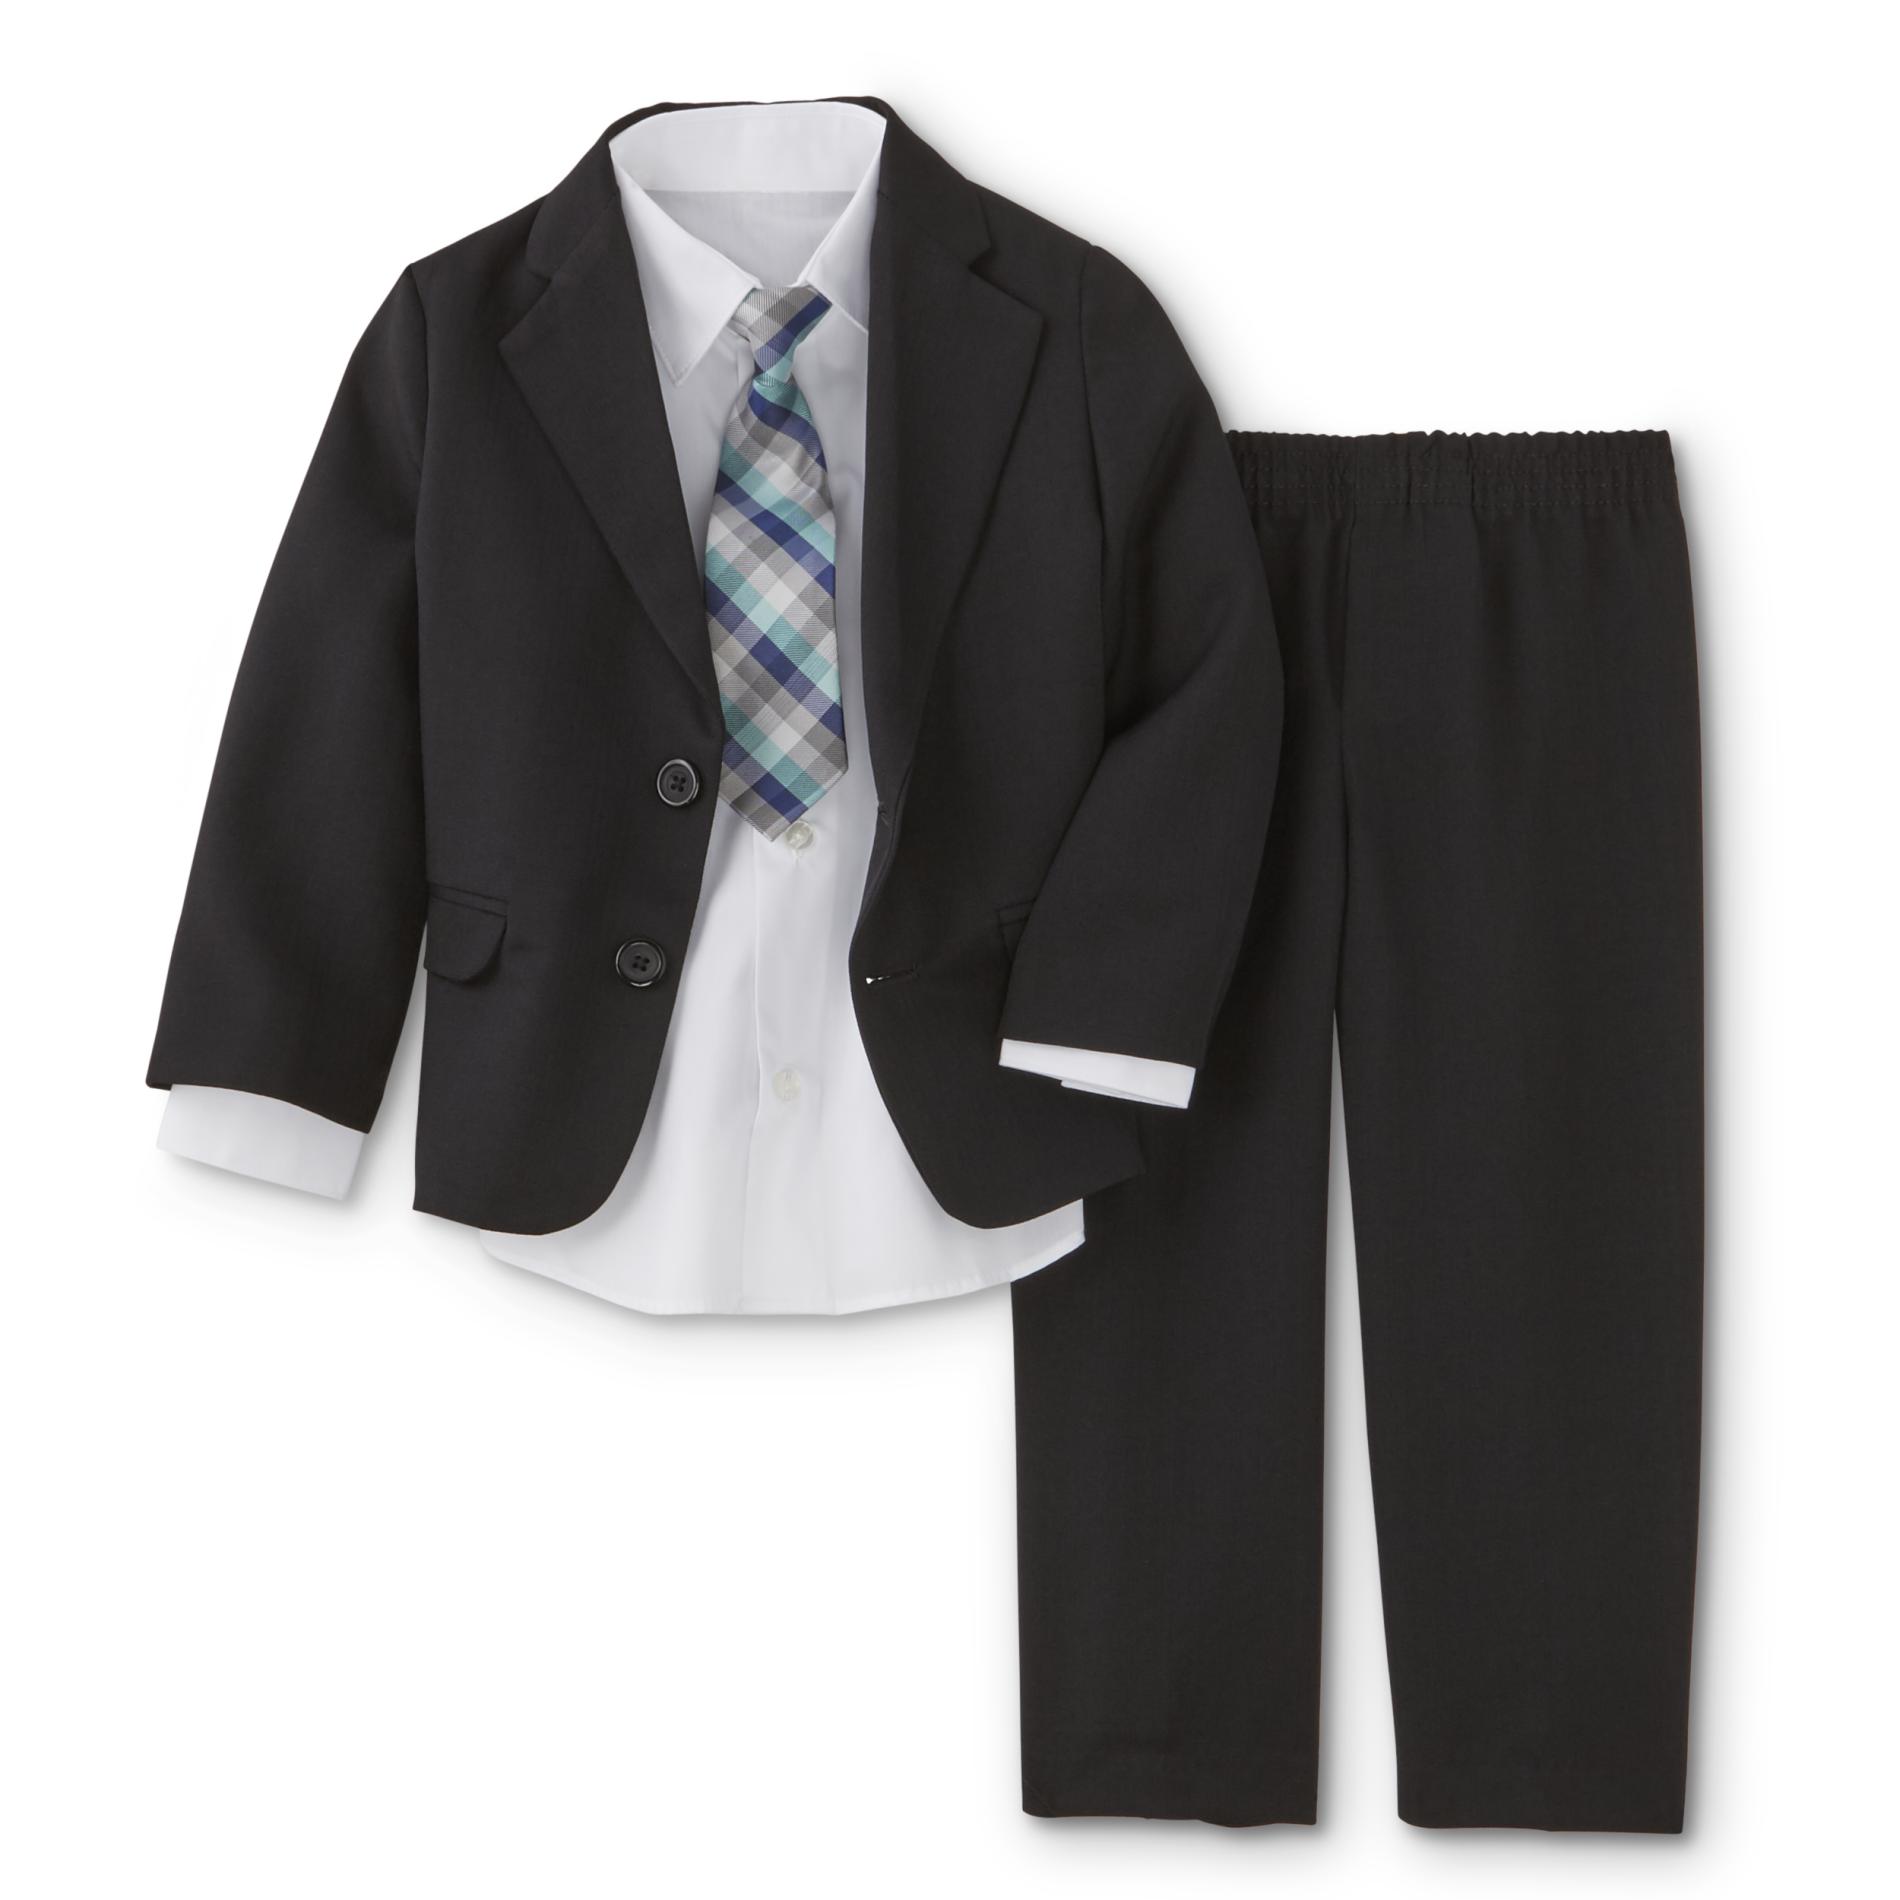 Dockers Infant & Toddler Boys' Suit Coat, Dress Pants, Shirt & Necktie - Plaid